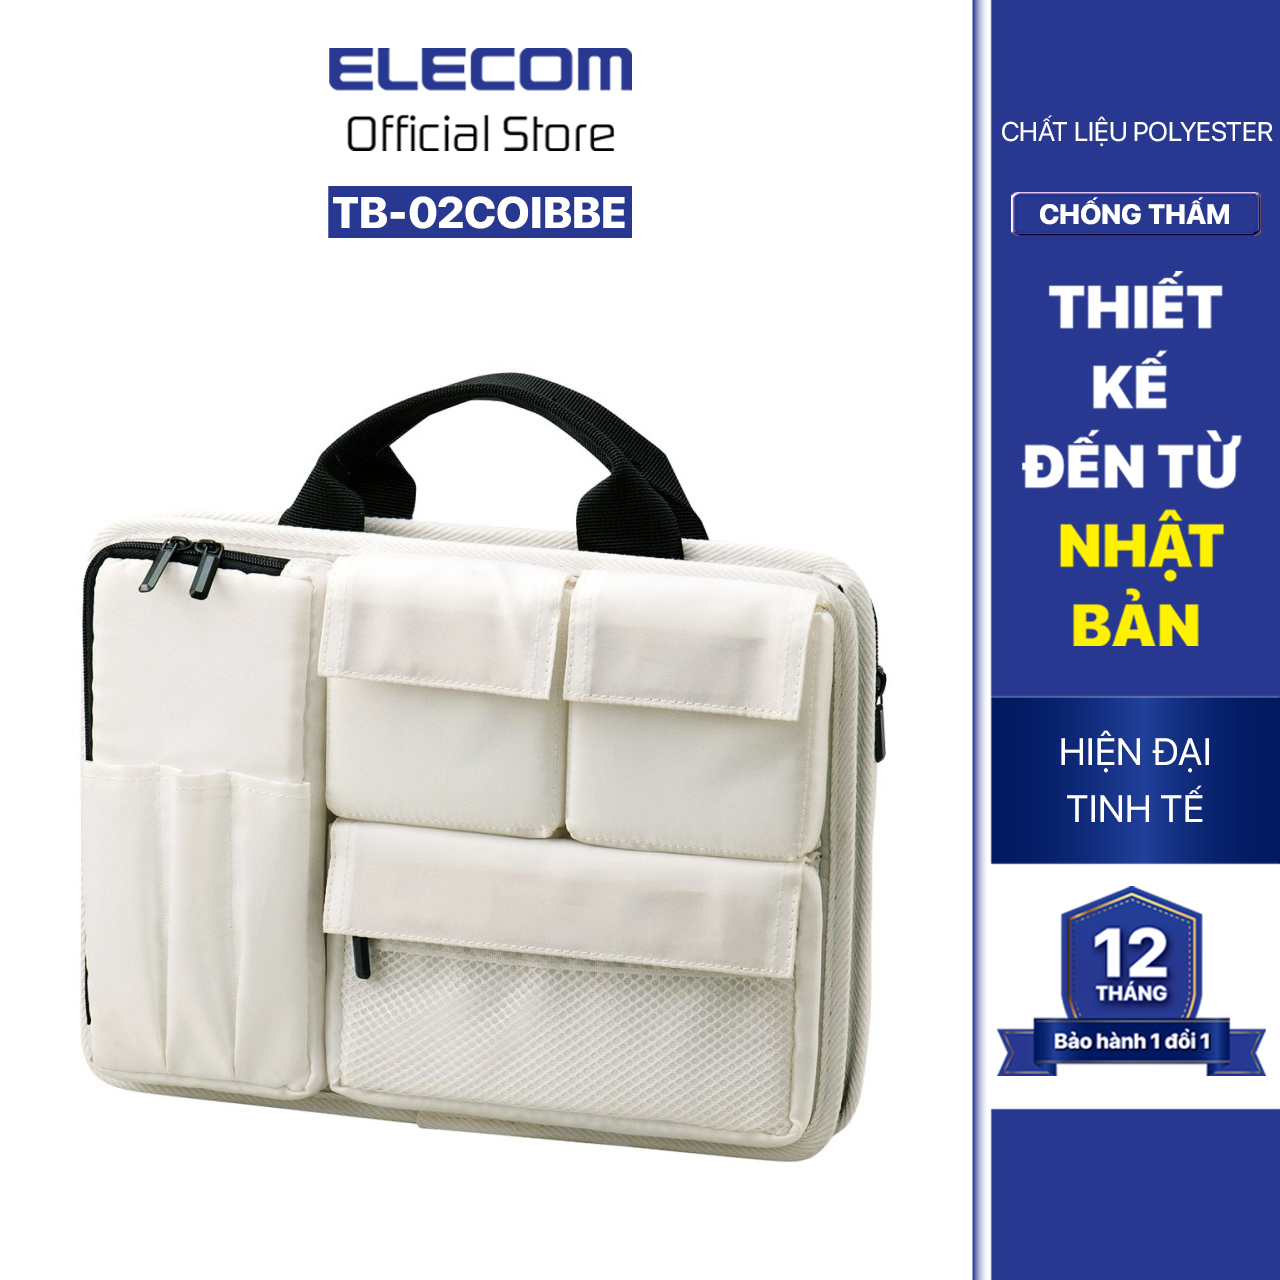 Túi đựng bên trong ELECOM TB-02COIBBE - Hàng chính hãng